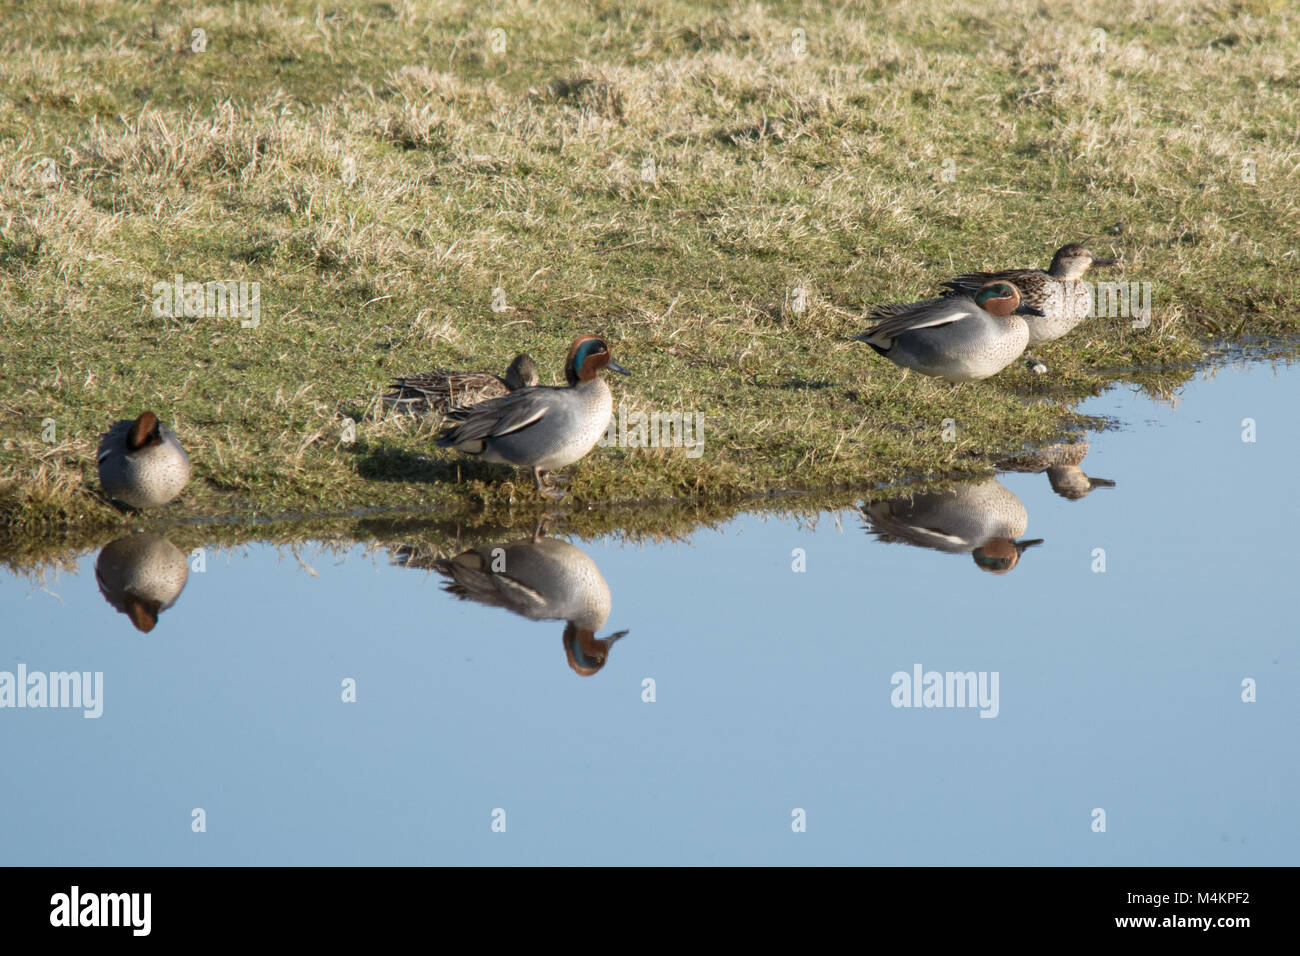 Diversi teal (Anas crecca) sul bordo dell'acqua con riflessi, anatre, uccelli, Regno Unito Foto Stock